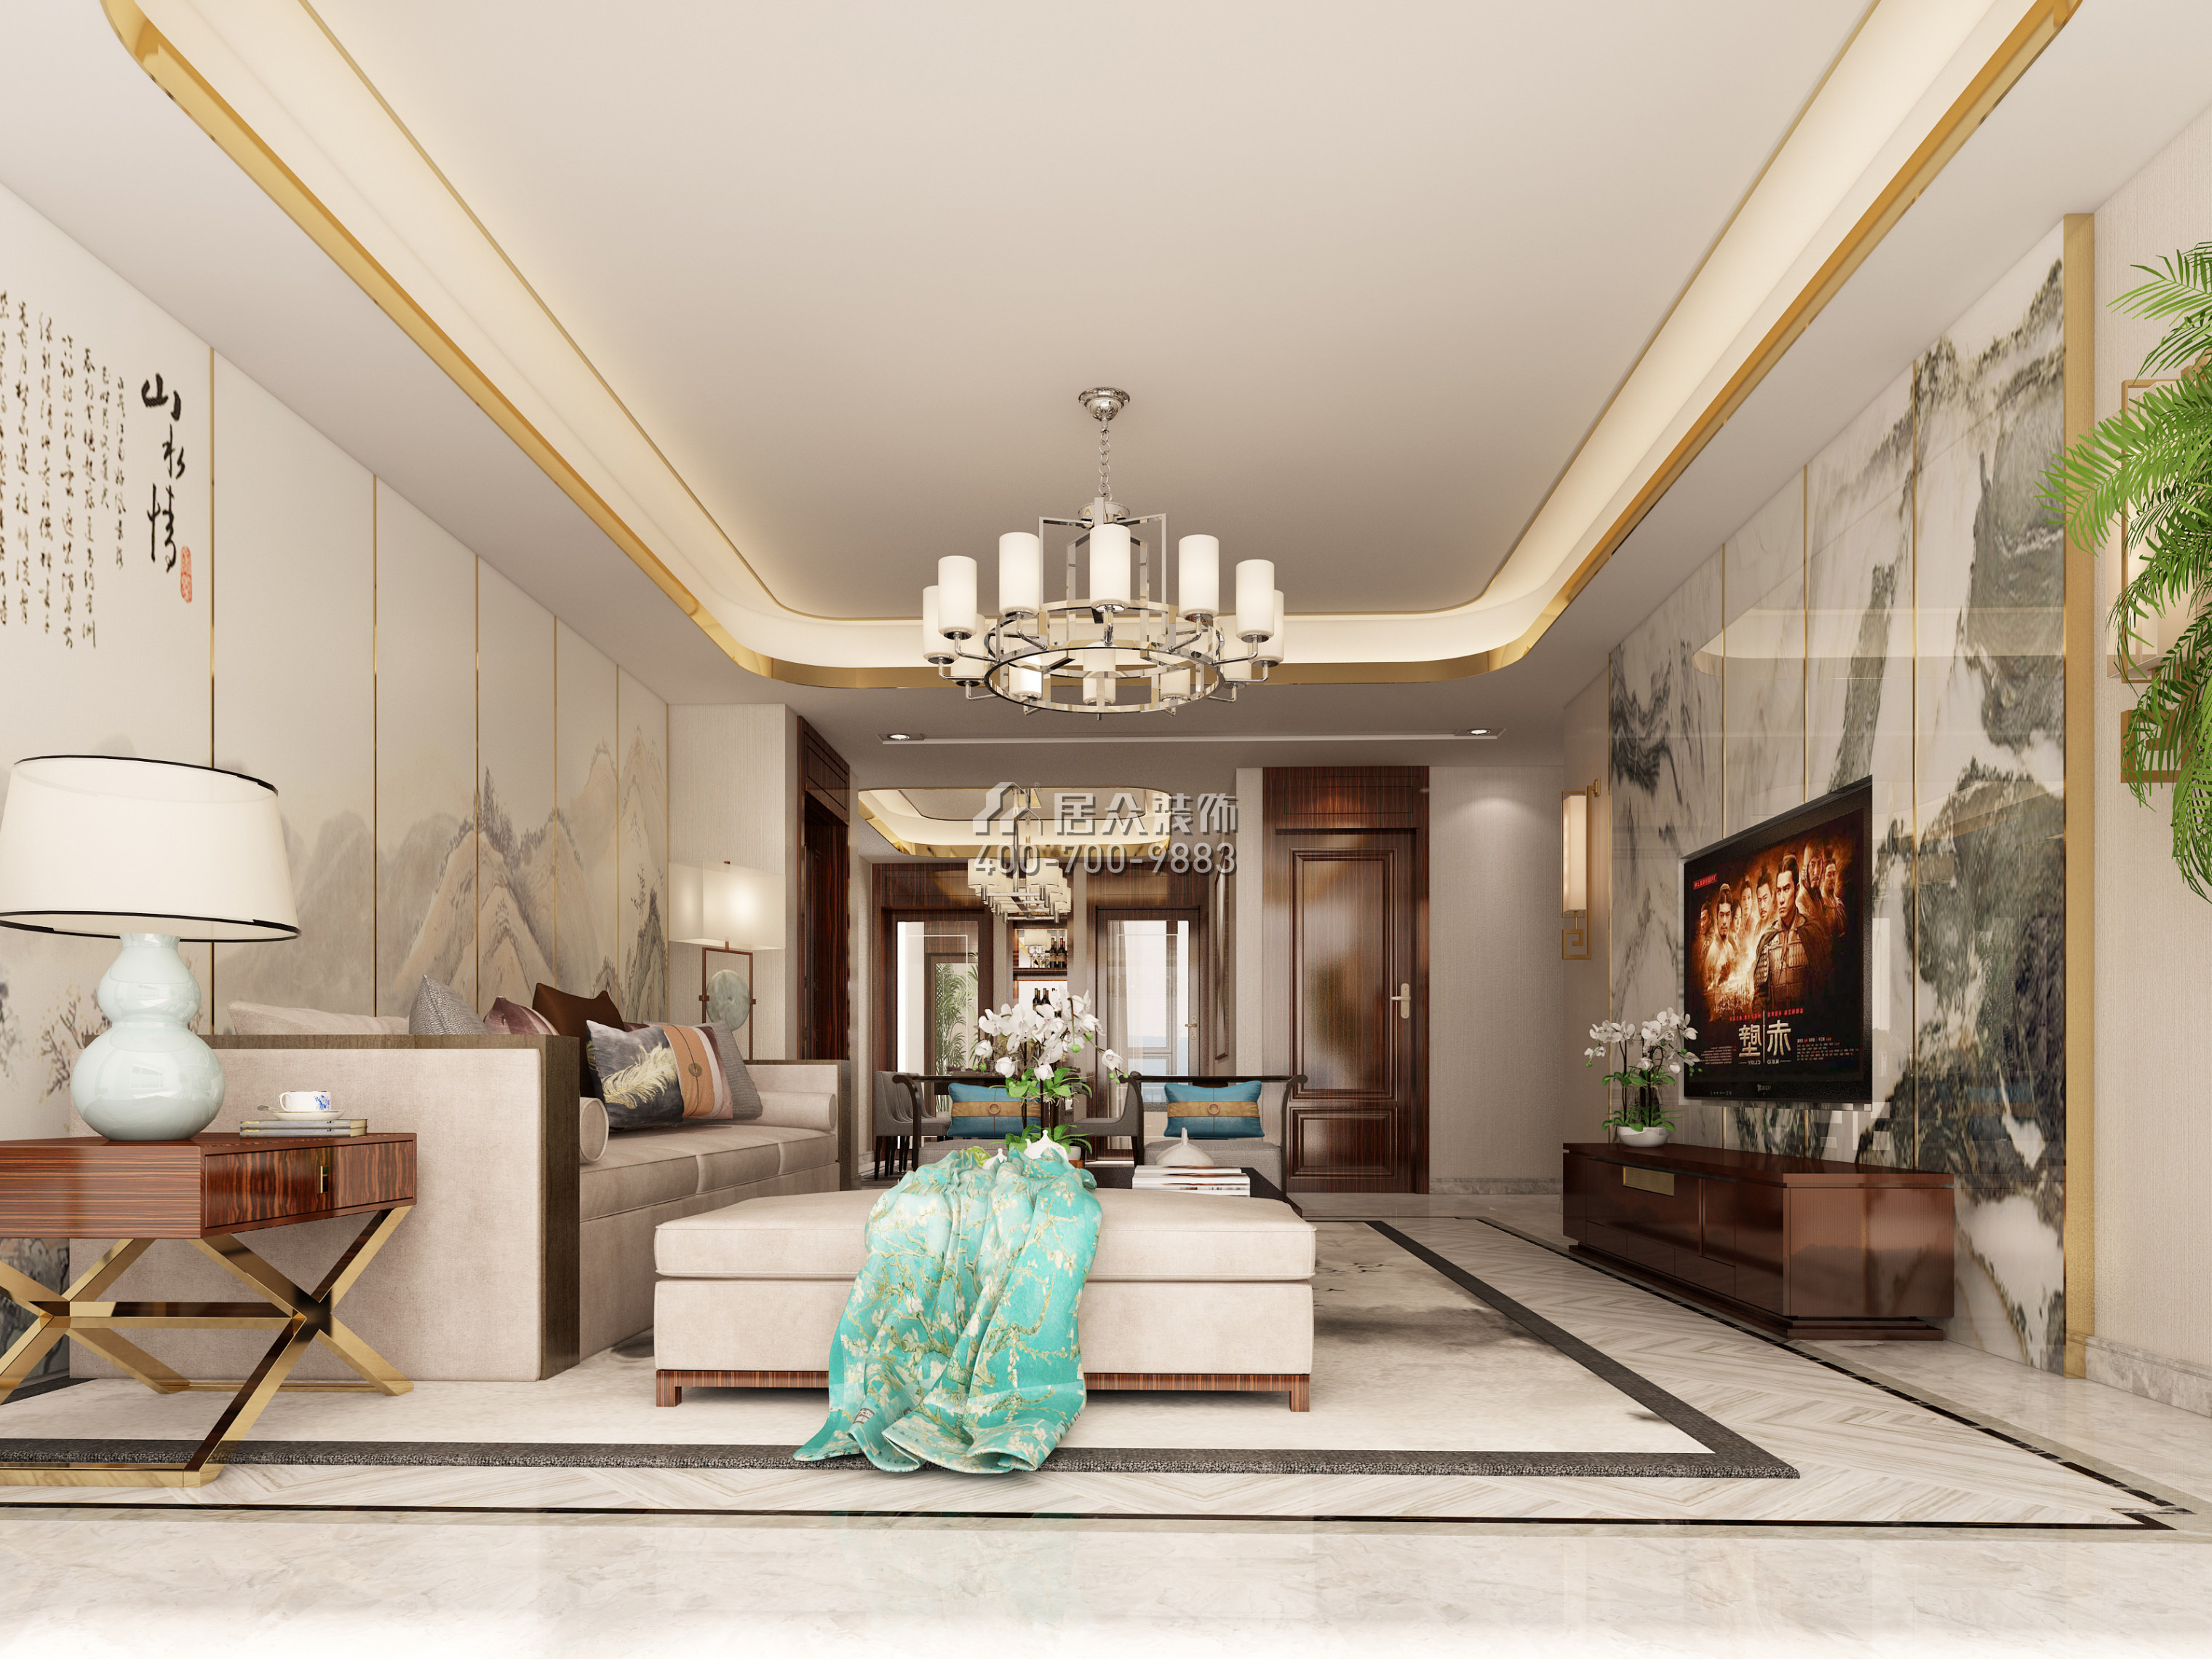 中建江山壹号250平方米中式风格平层户型客厅装修效果图